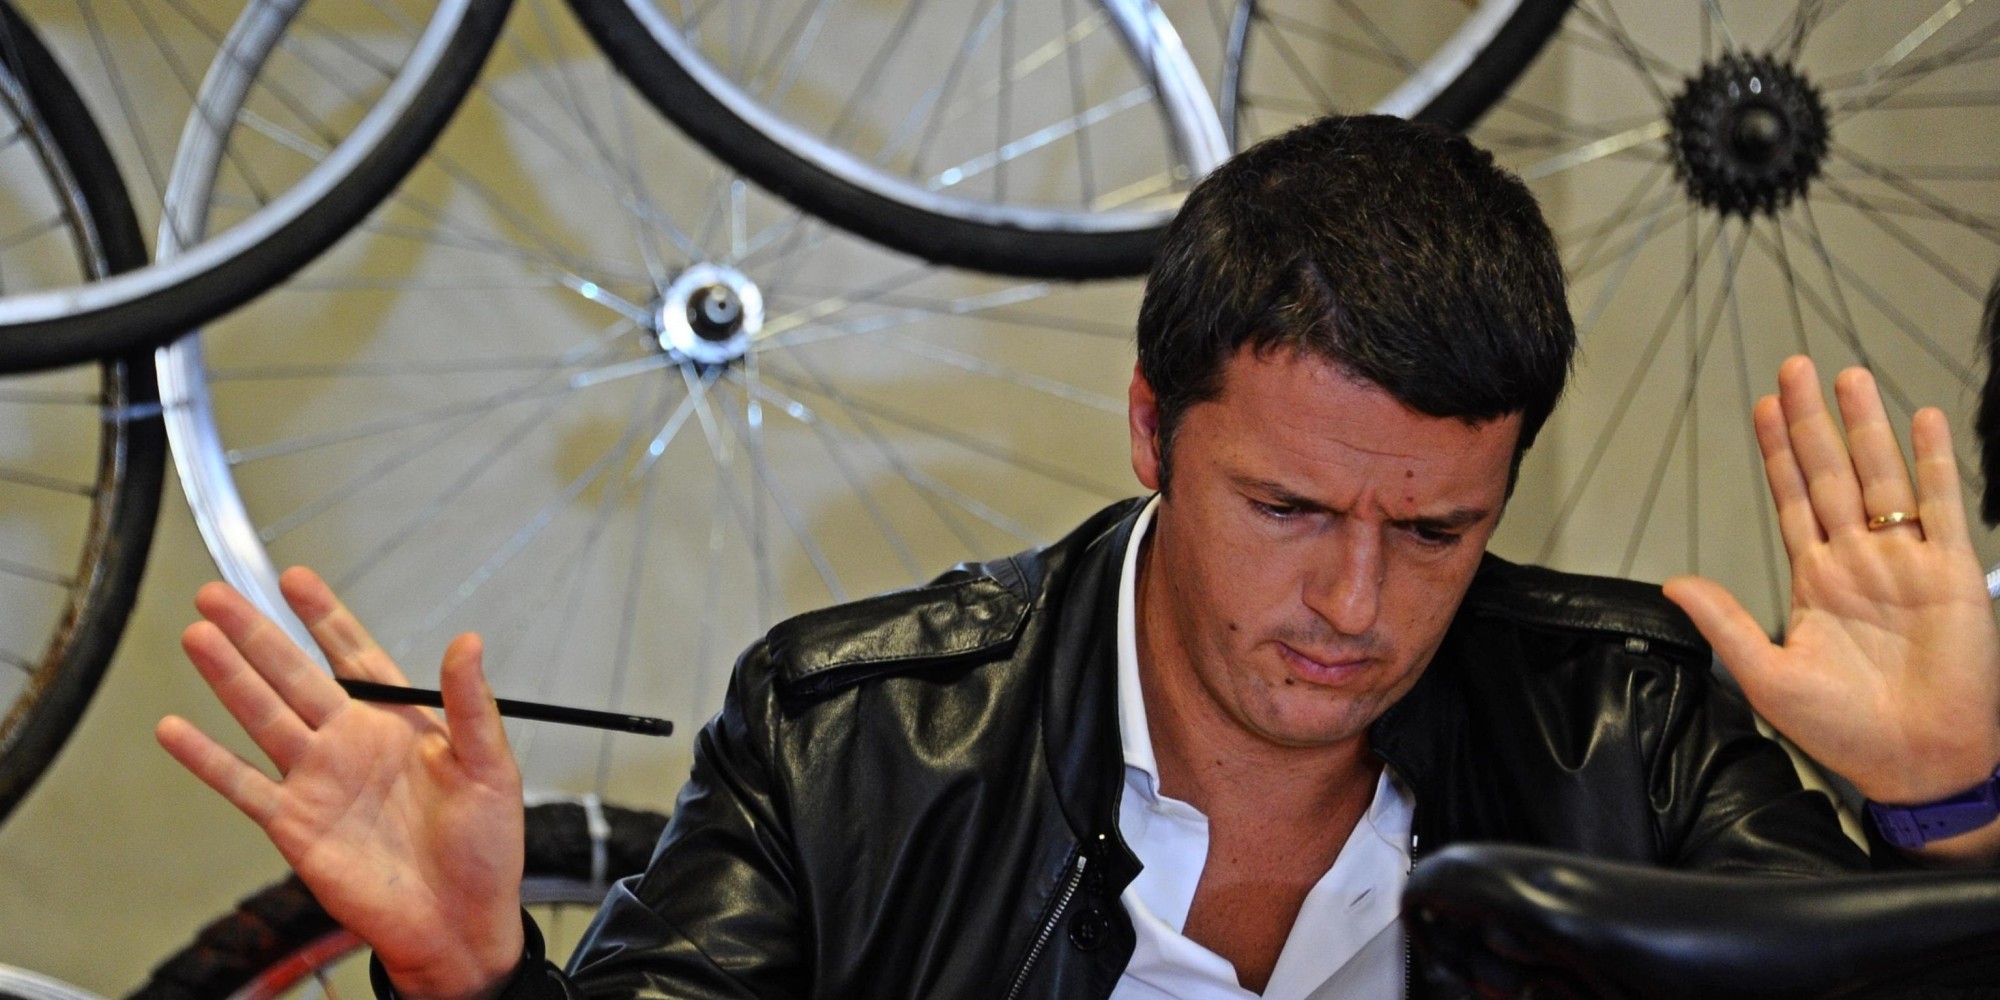 Матео Ренци призывал не изобретать велосипед, но теперь он уходит.